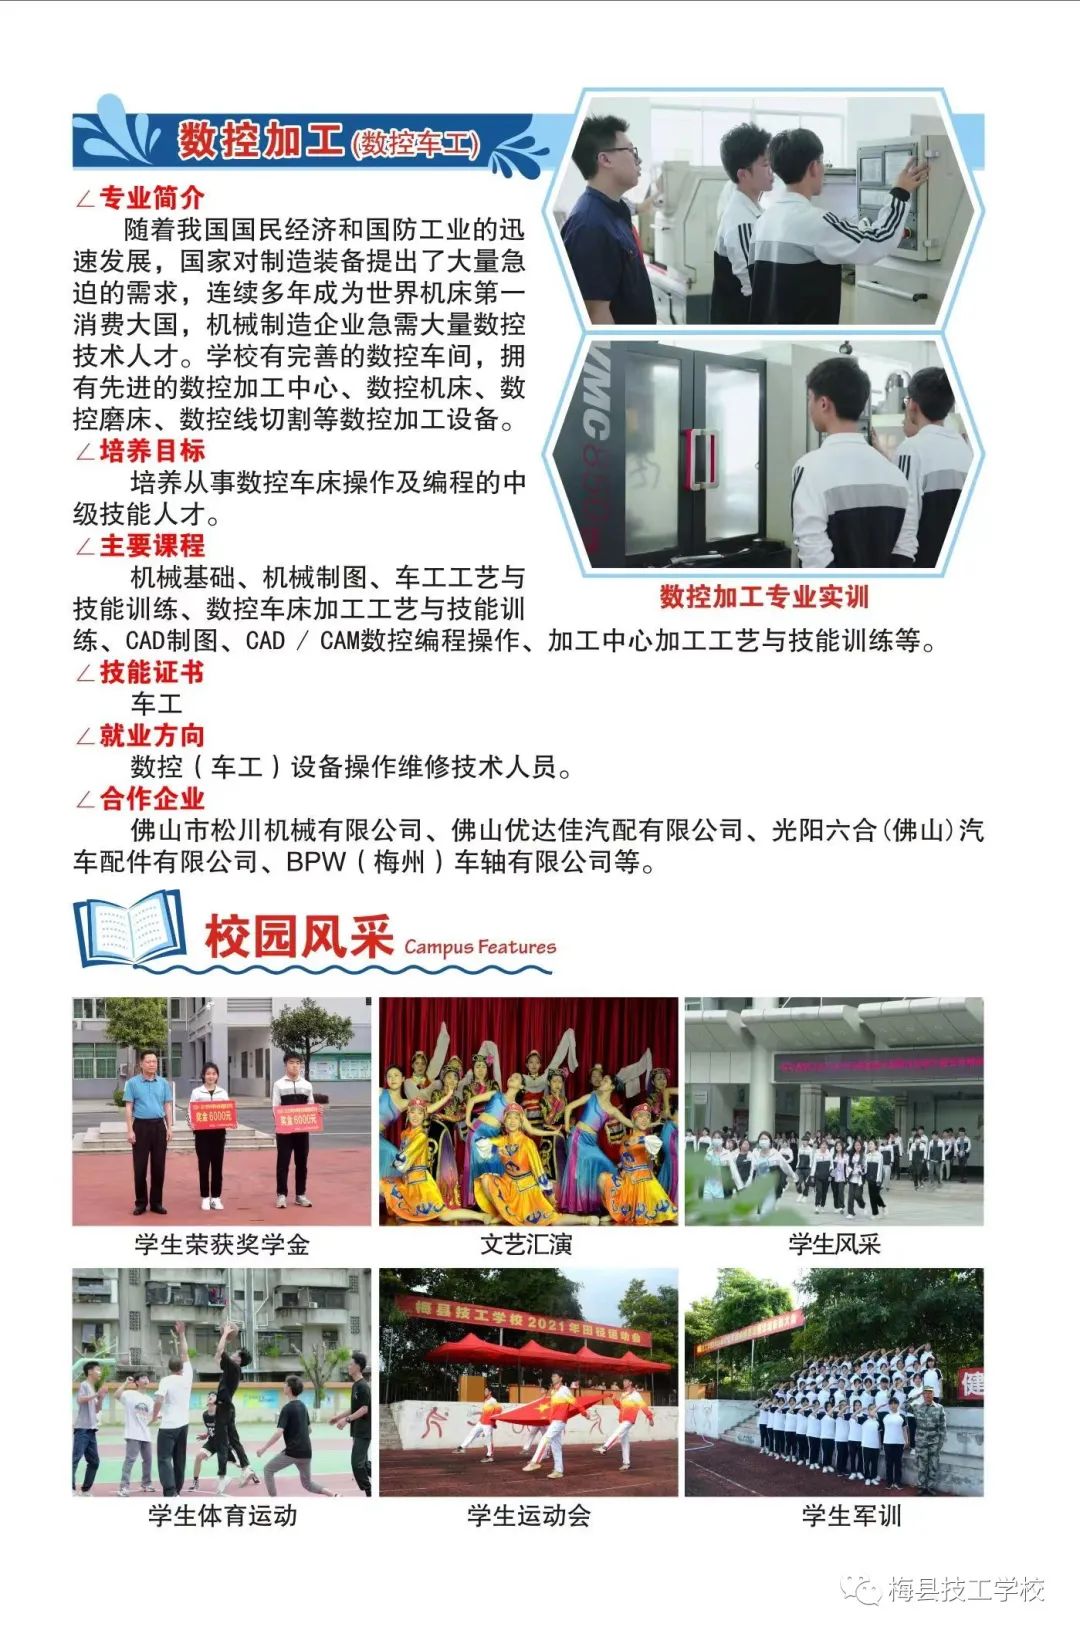 梅县技工学校2022年招生简章